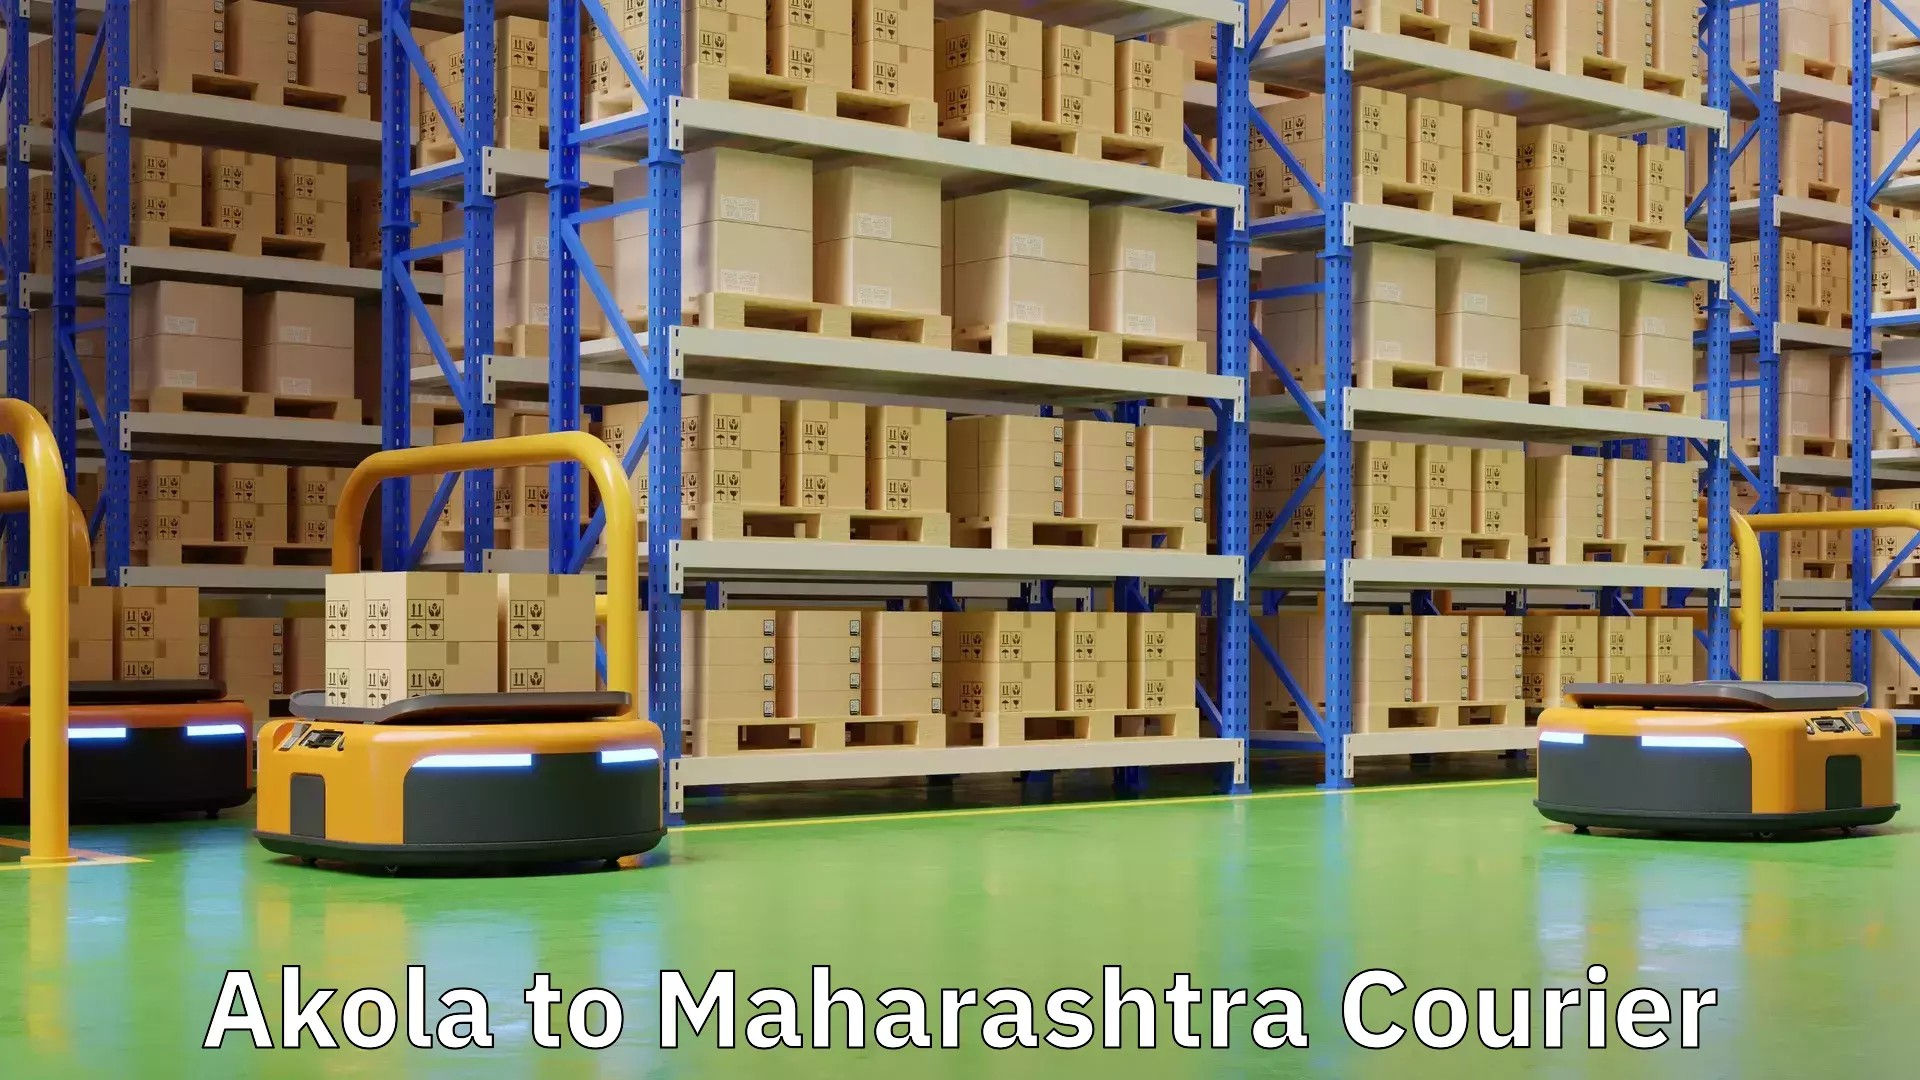 Tailored shipping services Akola to Maharashtra